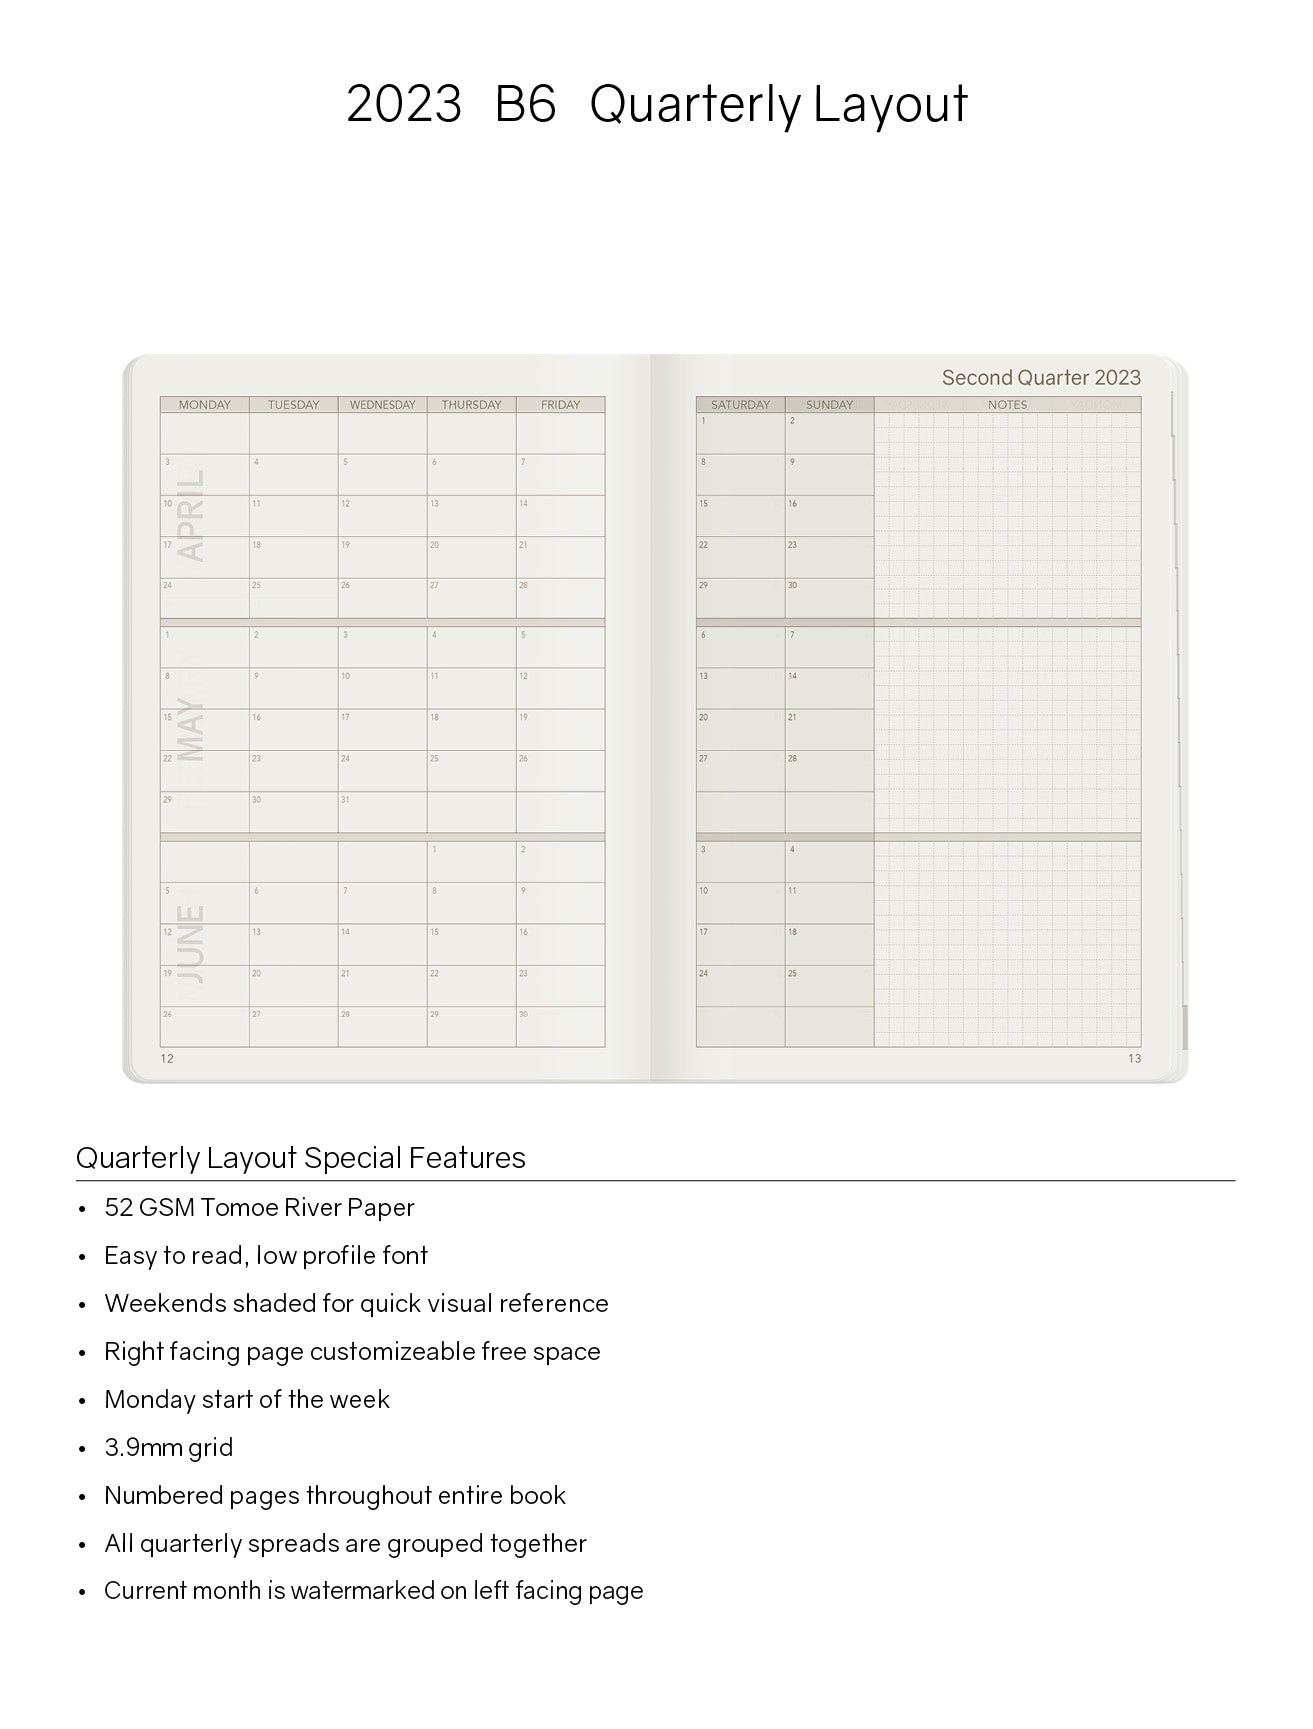 Sale | 2023 B6 Weekly Planner - 52gsm Tomoe River Paper